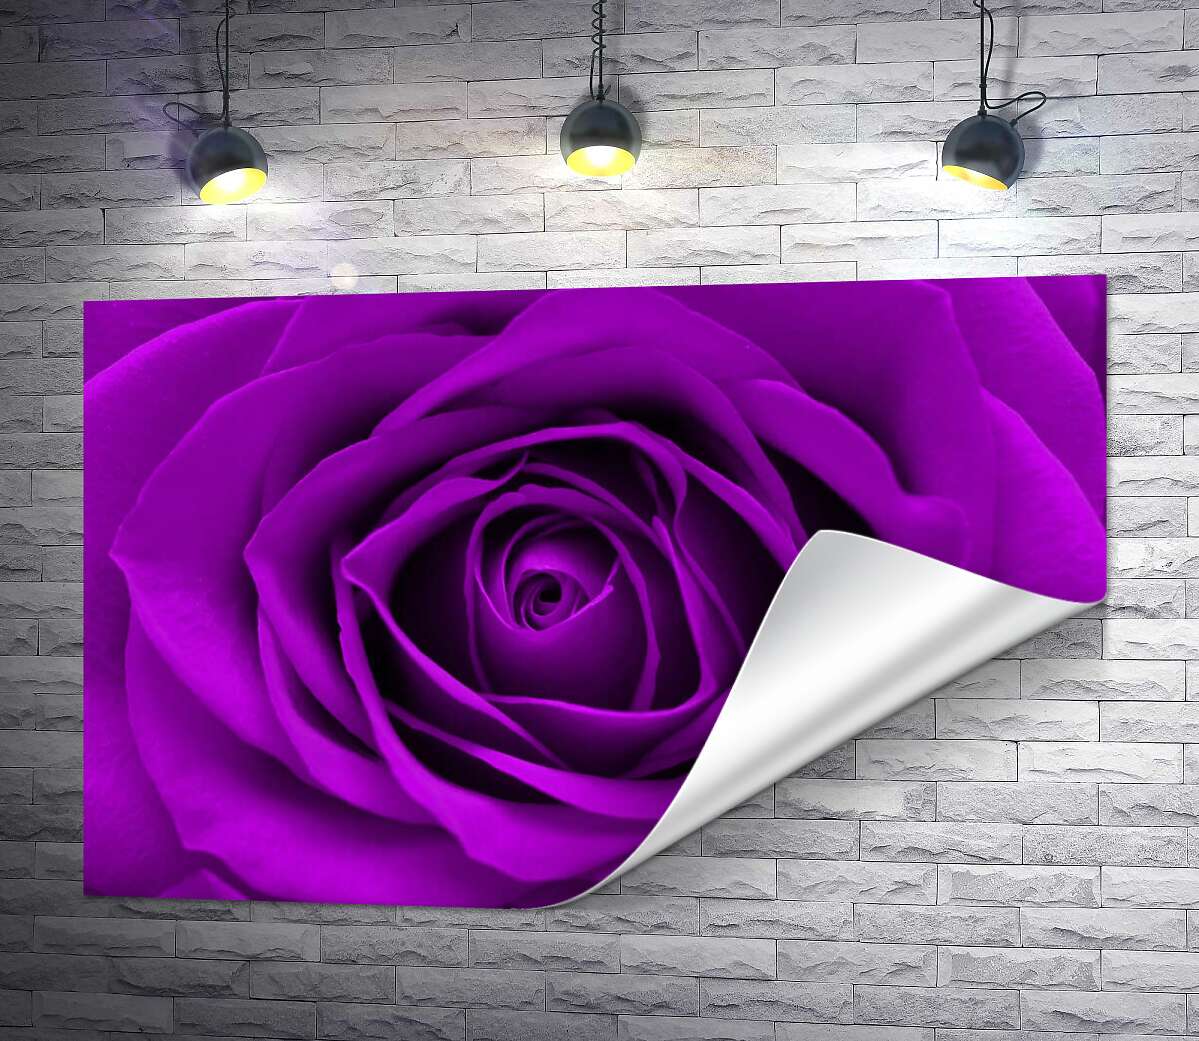 друк Насичено пурпуровий бутон троянди